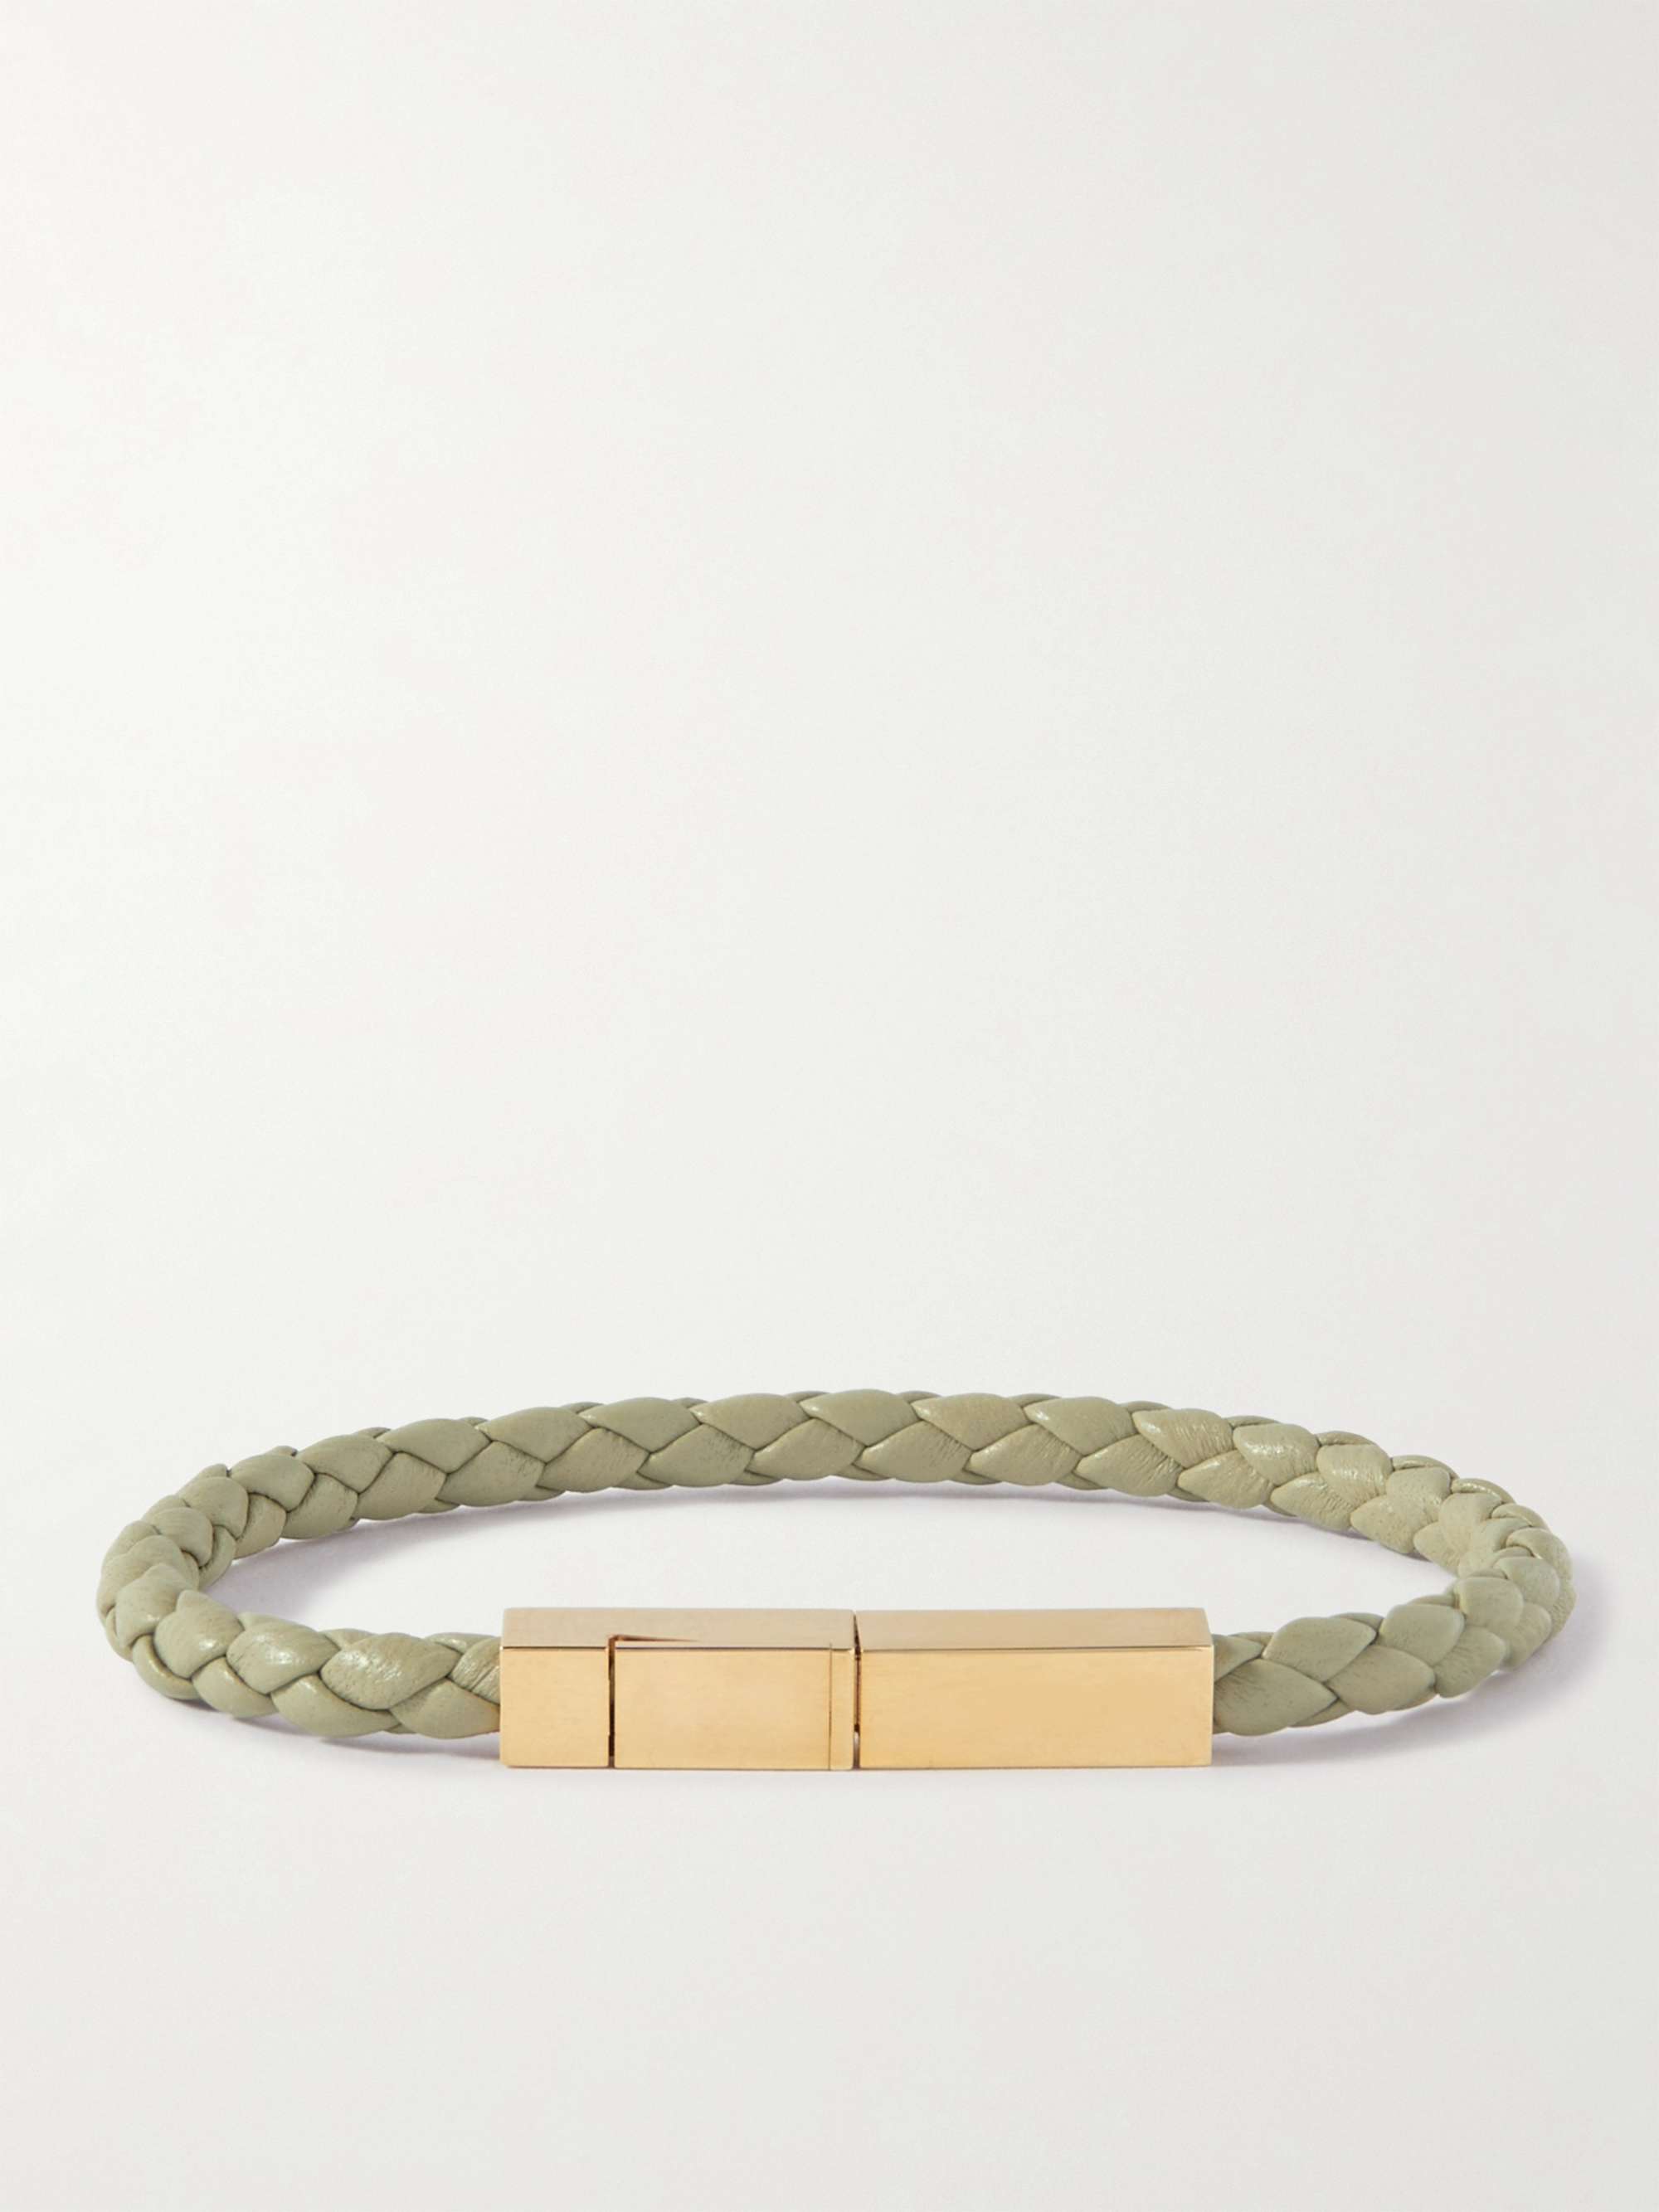 Bottega Veneta Men's Braided Leather Bracelet